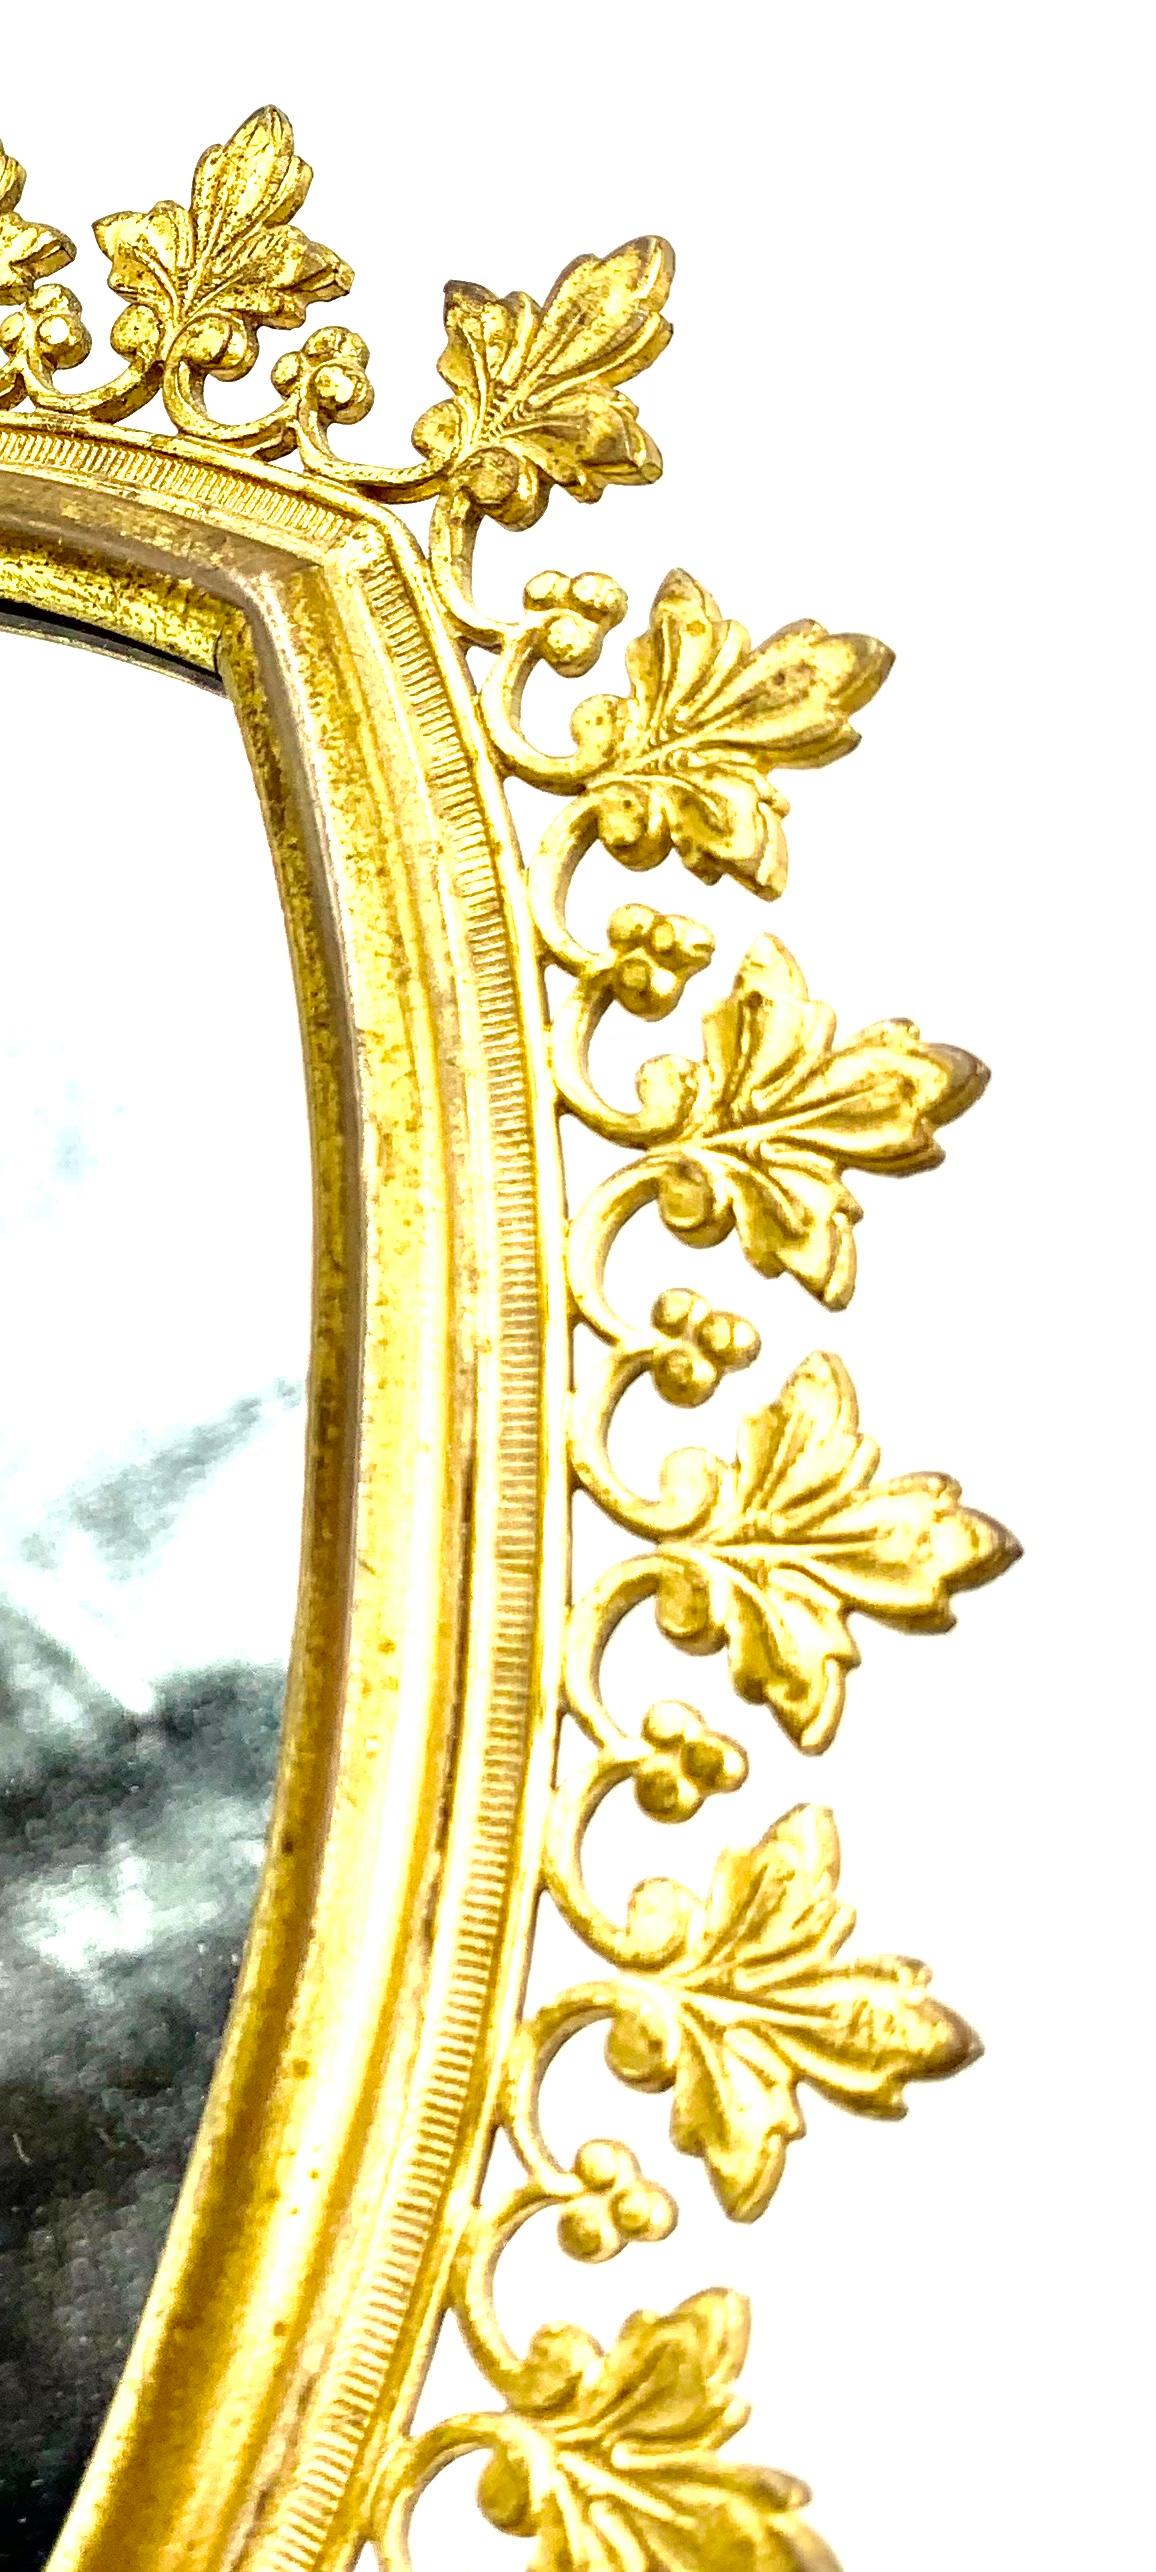 Eleganter und stilvoller Schminkspiegel aus vergoldeter Bronze im gotischen Stil. 
Frankreich, 19. Jahrhundert
Schöne antike Goldpatina, feine Details, ungewöhnliches Blatt- und Beerenmuster. Die wohlproportionierte, geschwungene Bogenform ist